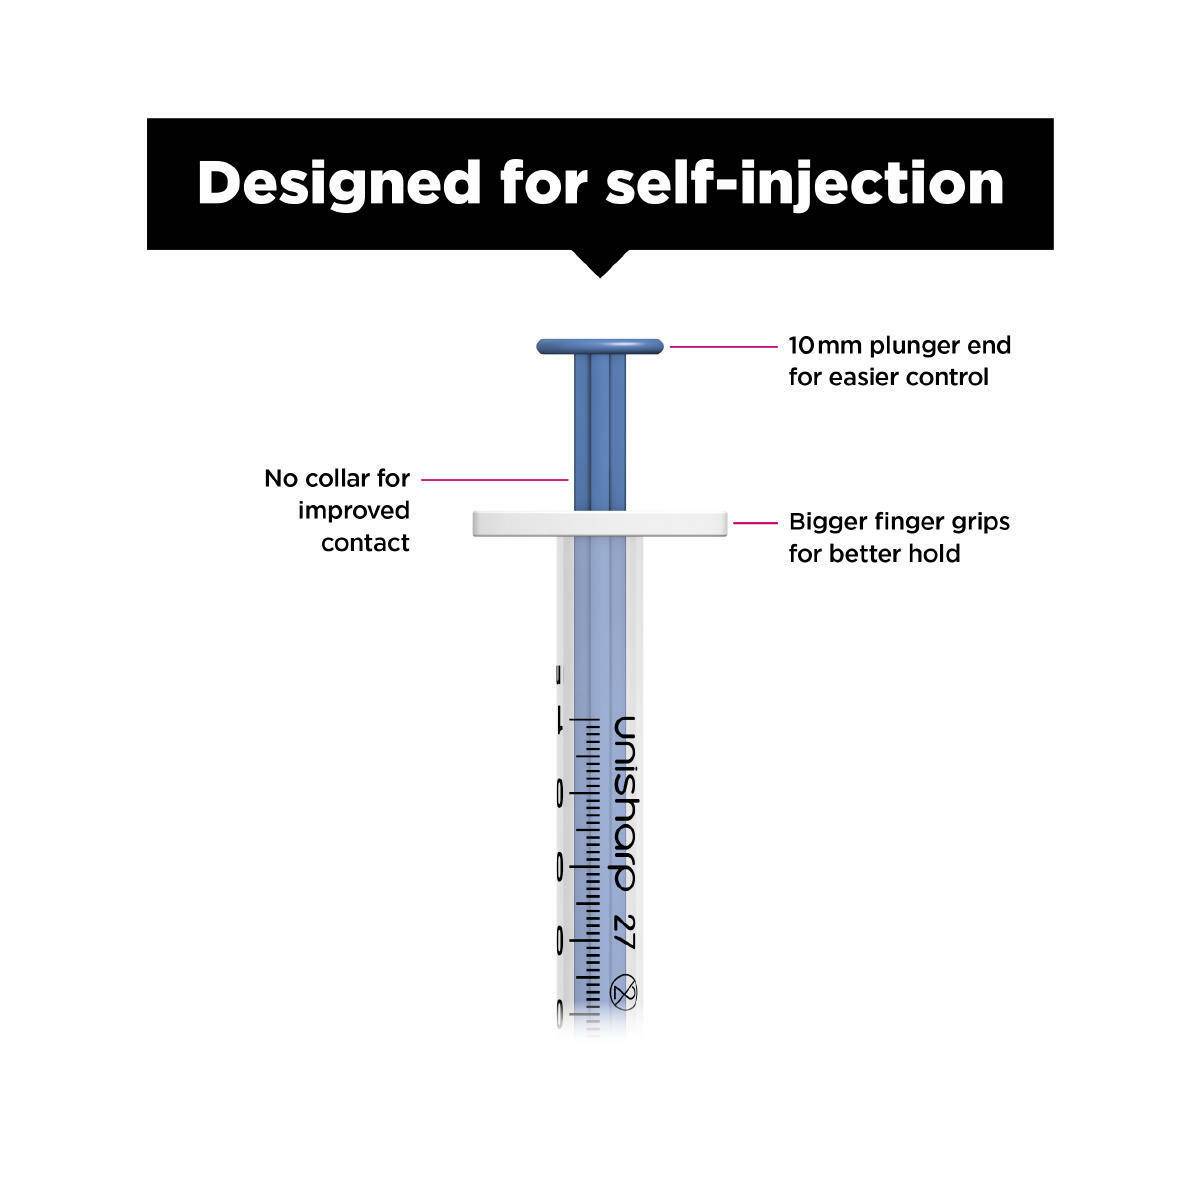 1ml 0.5 inch 27g Blue Unisharp Syringe and Needle u100